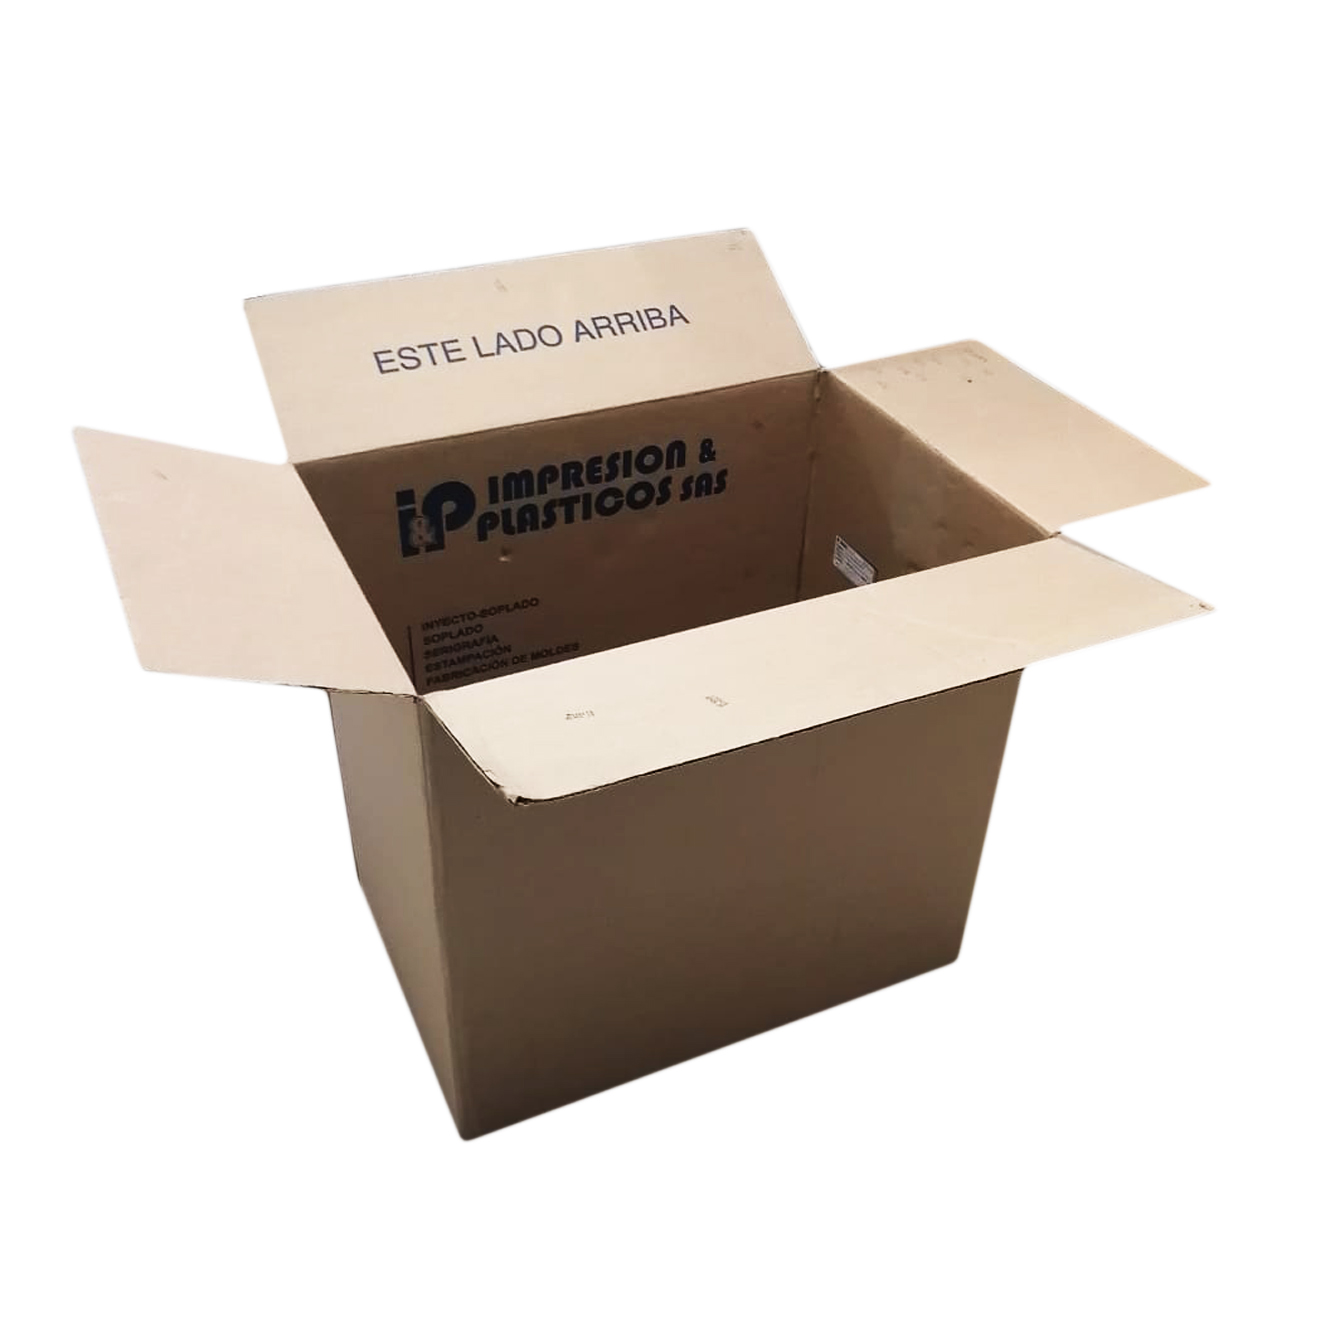 Caja de cartón corrugado extra grande › Ecoreciclaje Universal